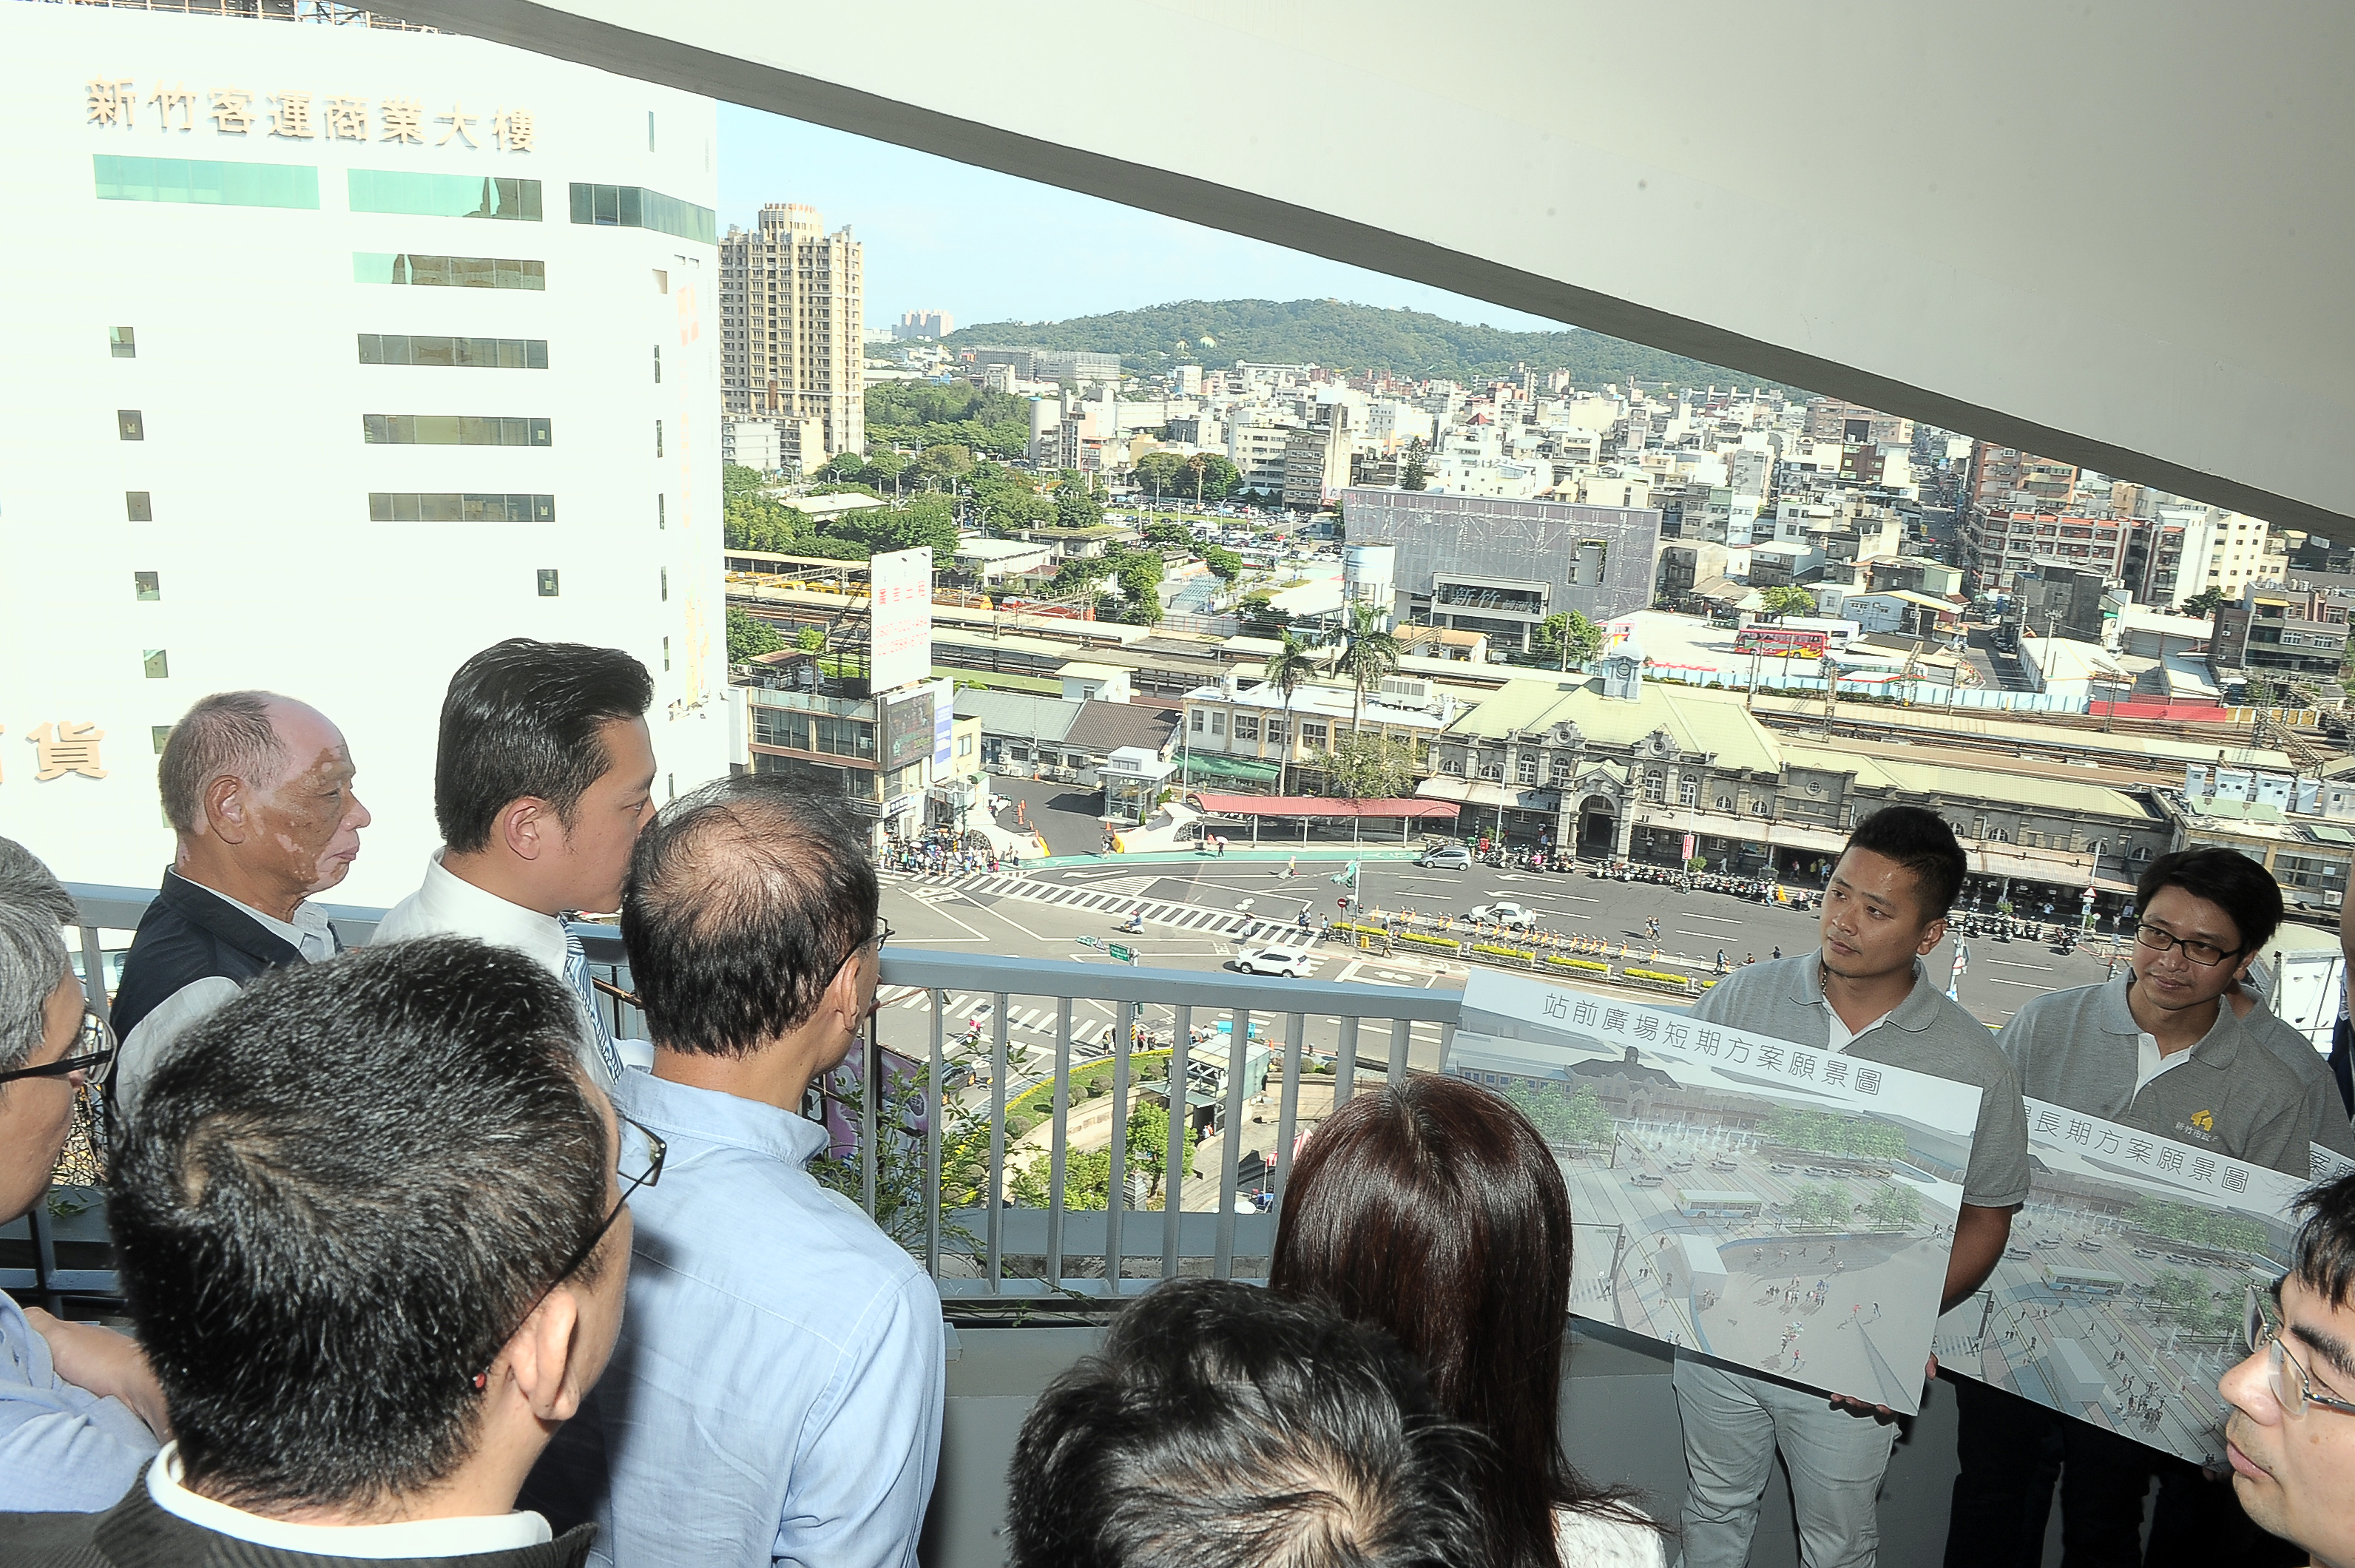 林揆視察新竹火車站與新竹公園 期盼推動相關計畫 建設宜居城市